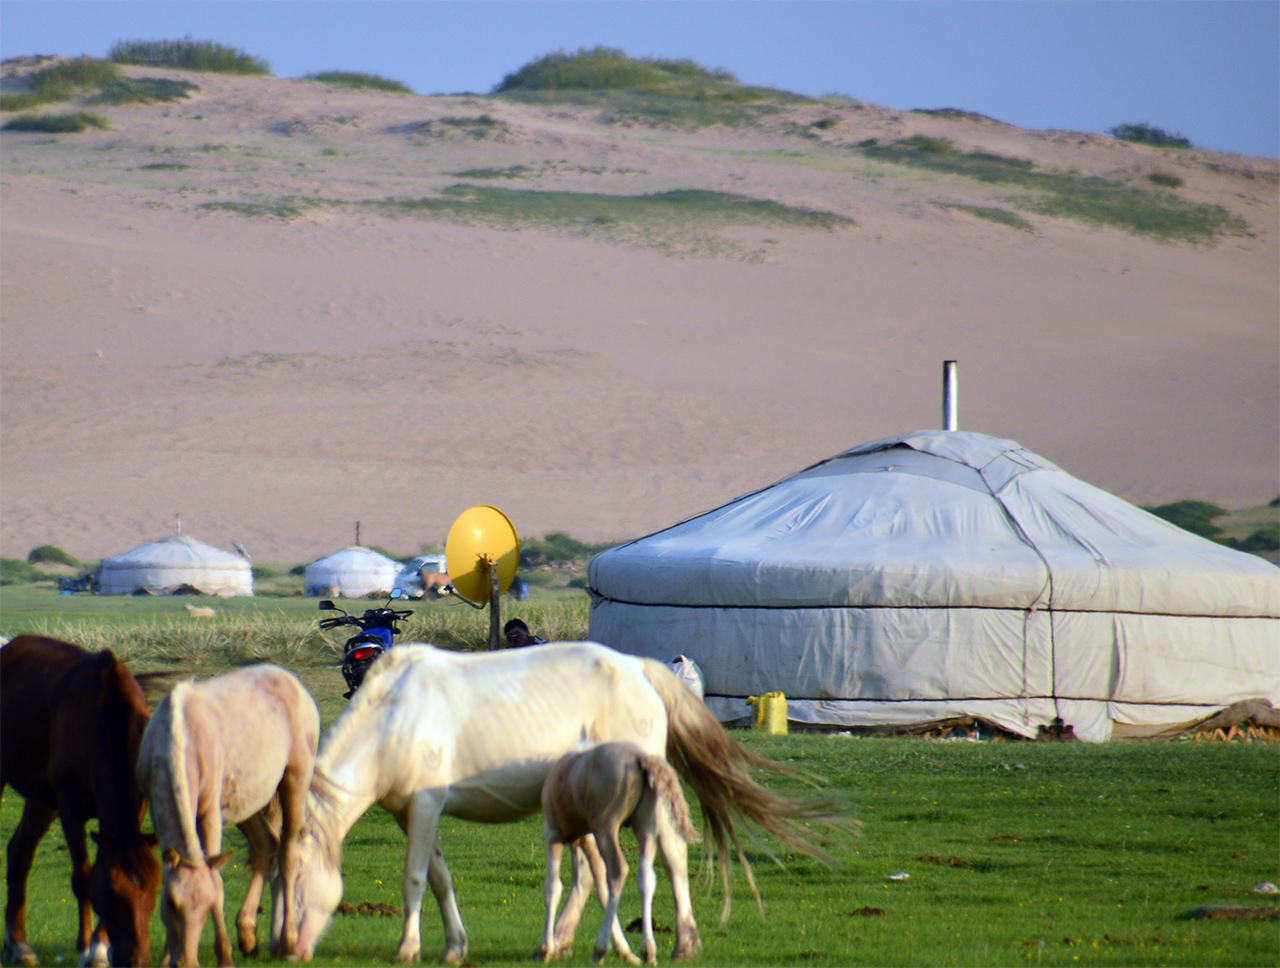 게르 주변의 가축들은 유목민 주인으로부터 보호를 받는다.